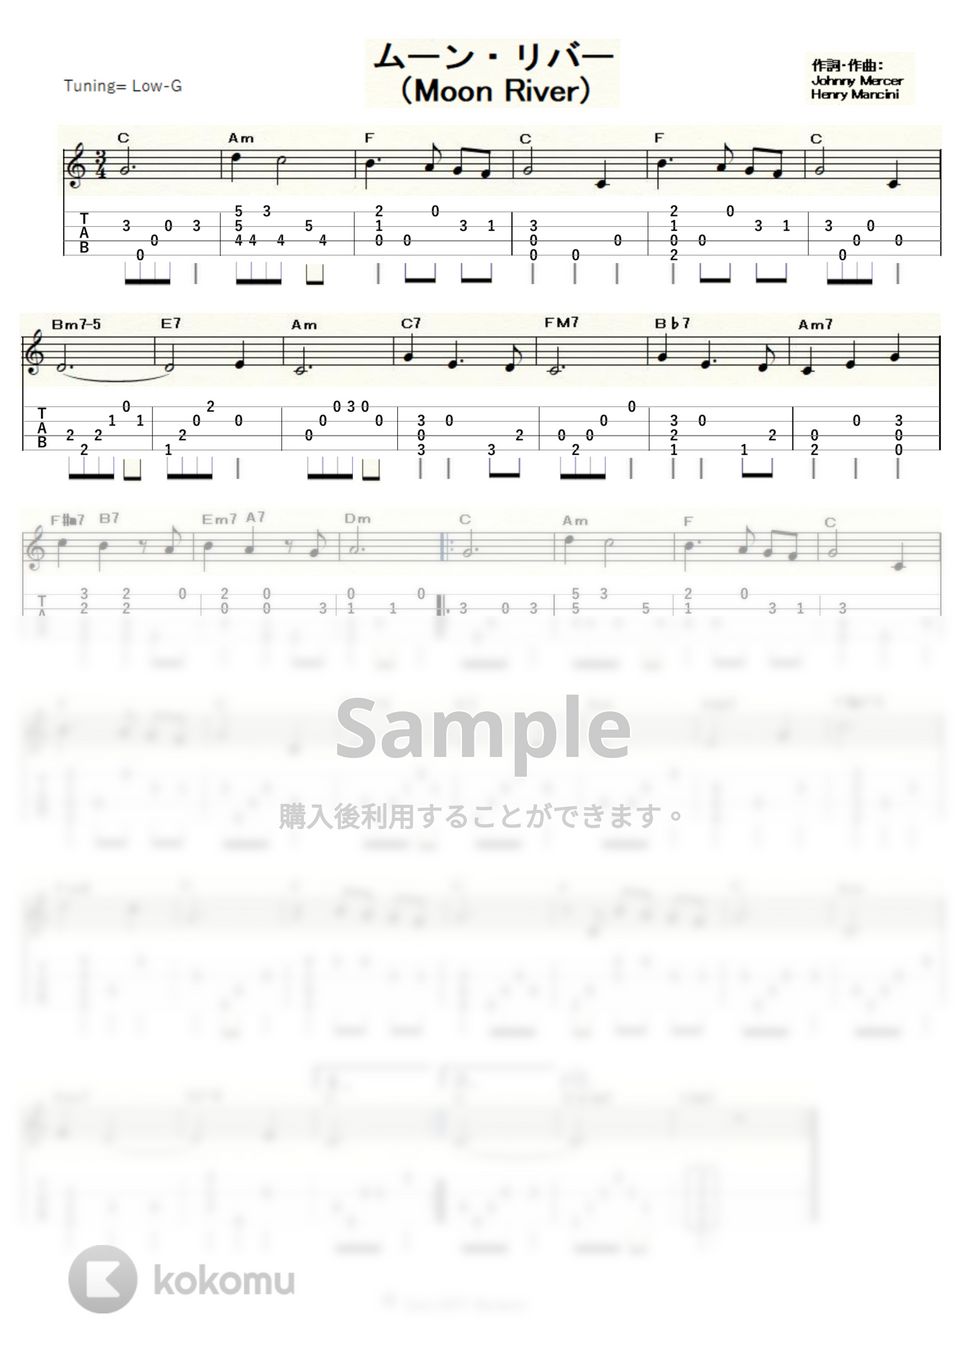 ヘンリー・マンシーニ - ムーン・リバー (ｳｸﾚﾚｿﾛ / Low-G / 初～中級) by ukulelepapa